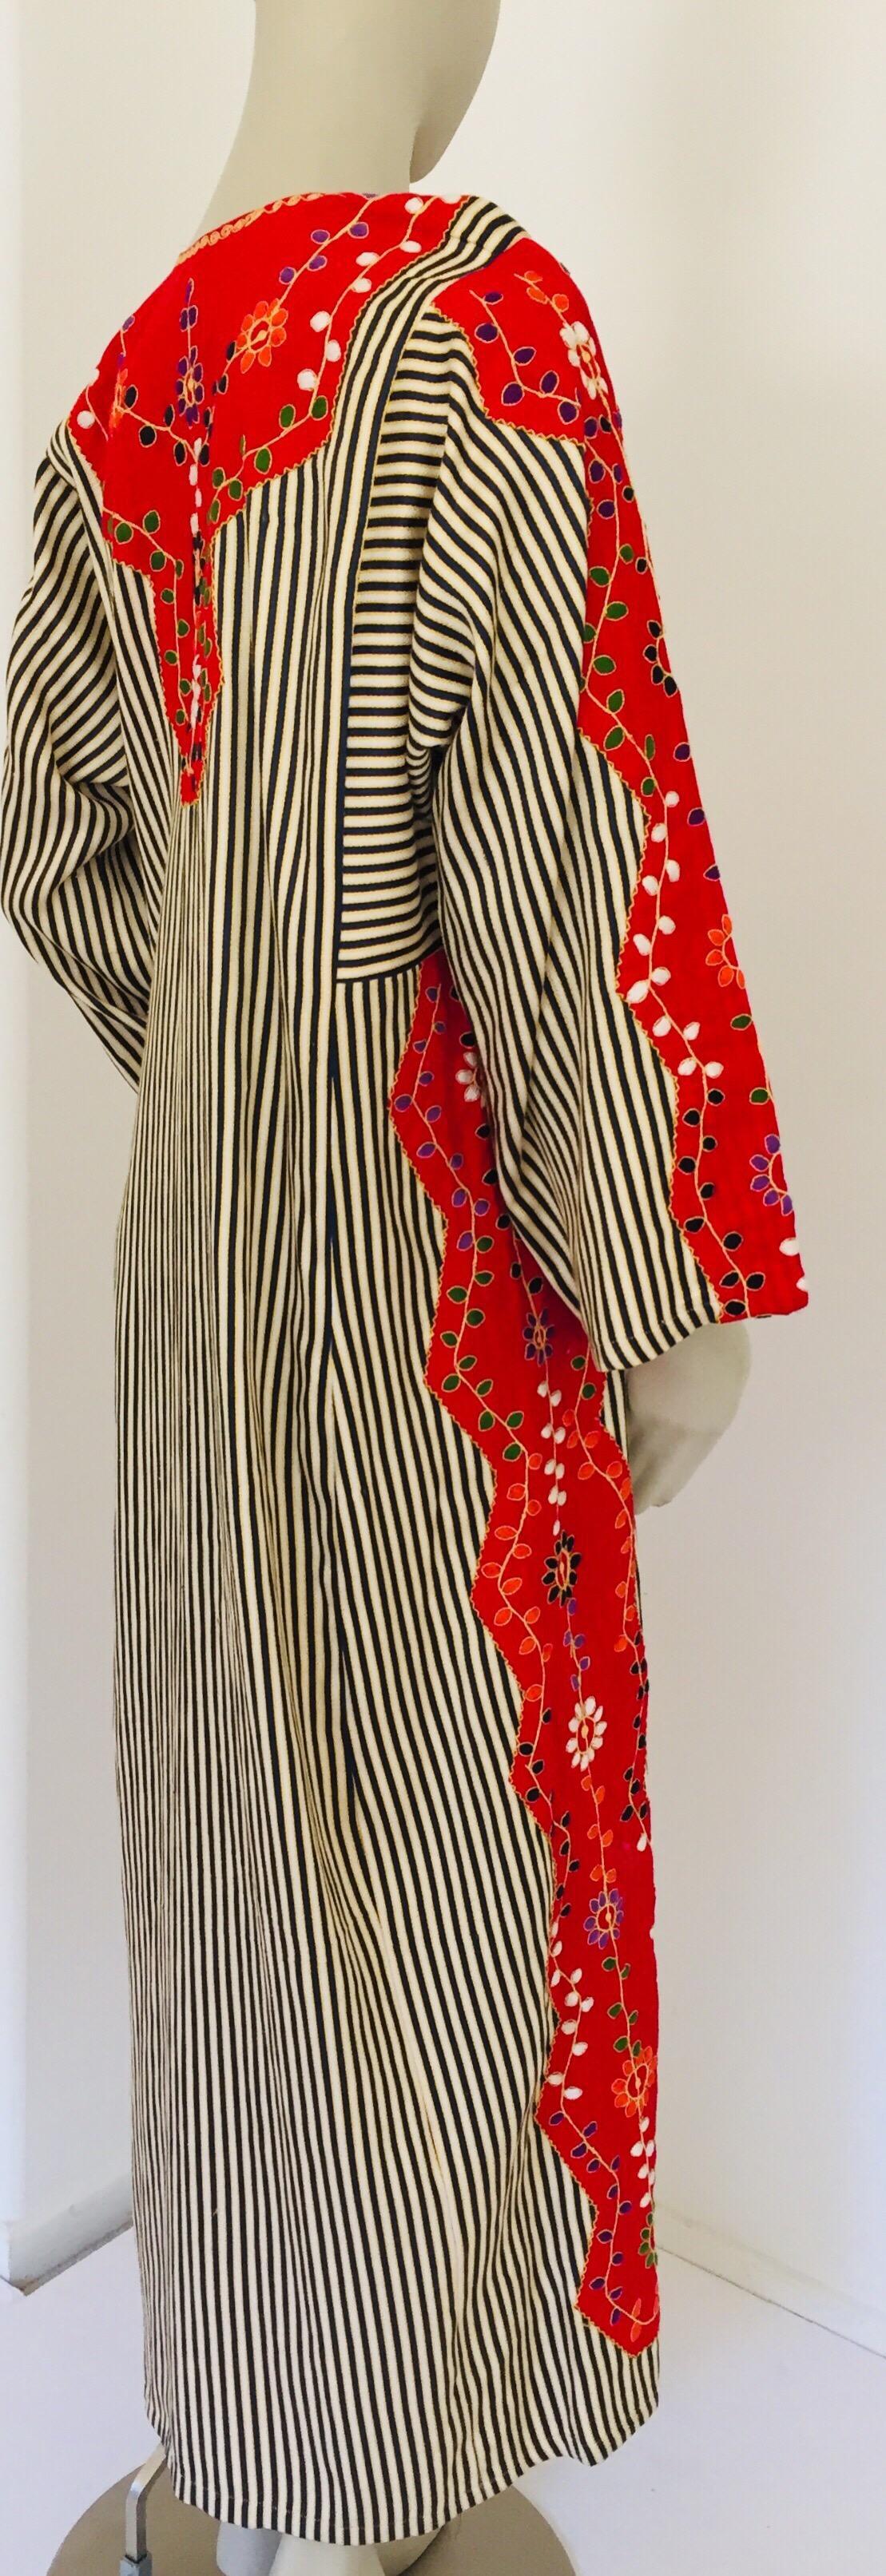 Vintage Middle Eastern Ethnic Caftan, Kaftan Maxi Dress For Sale 8